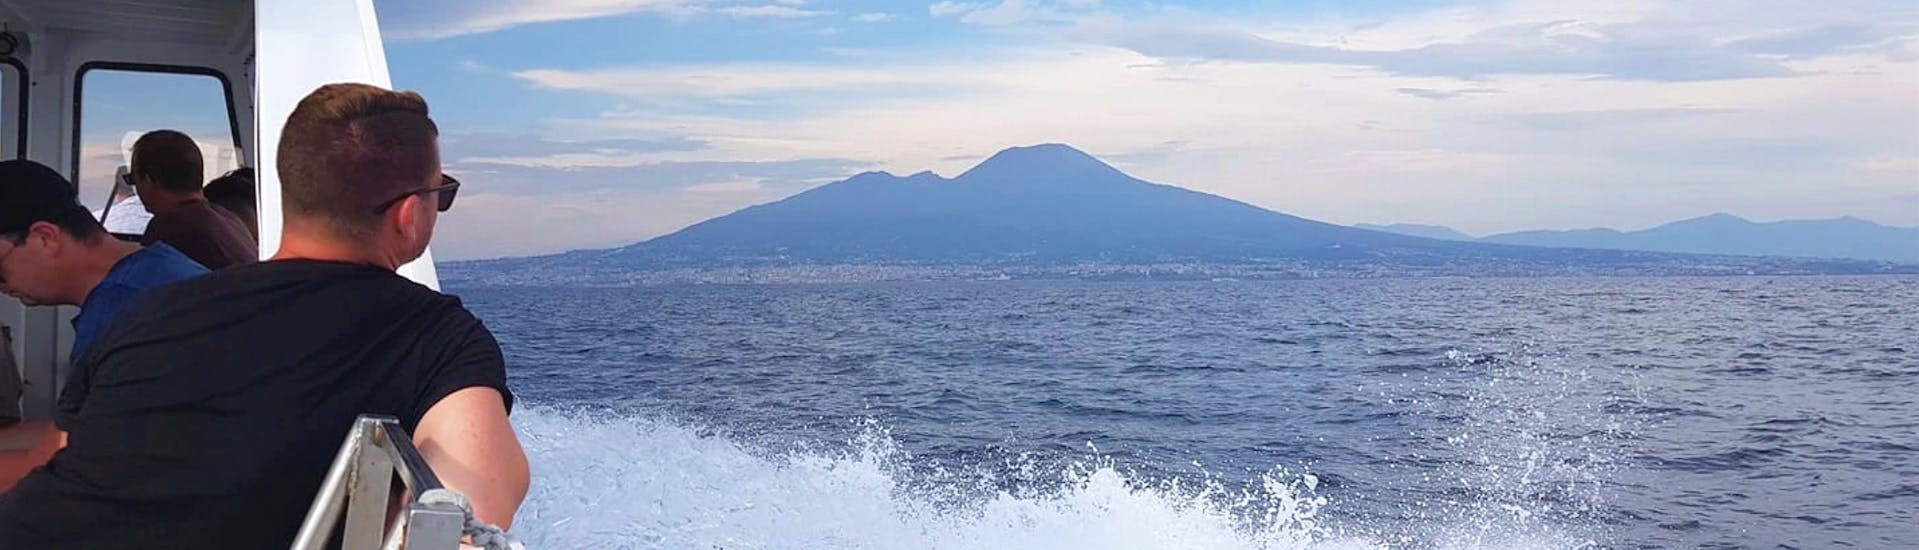 Un homme regarde le mont Vésuve en naviguant vers Capri pendant la Excursion de Naples à Capri & Visite guidée de l'île avec HP Travel.